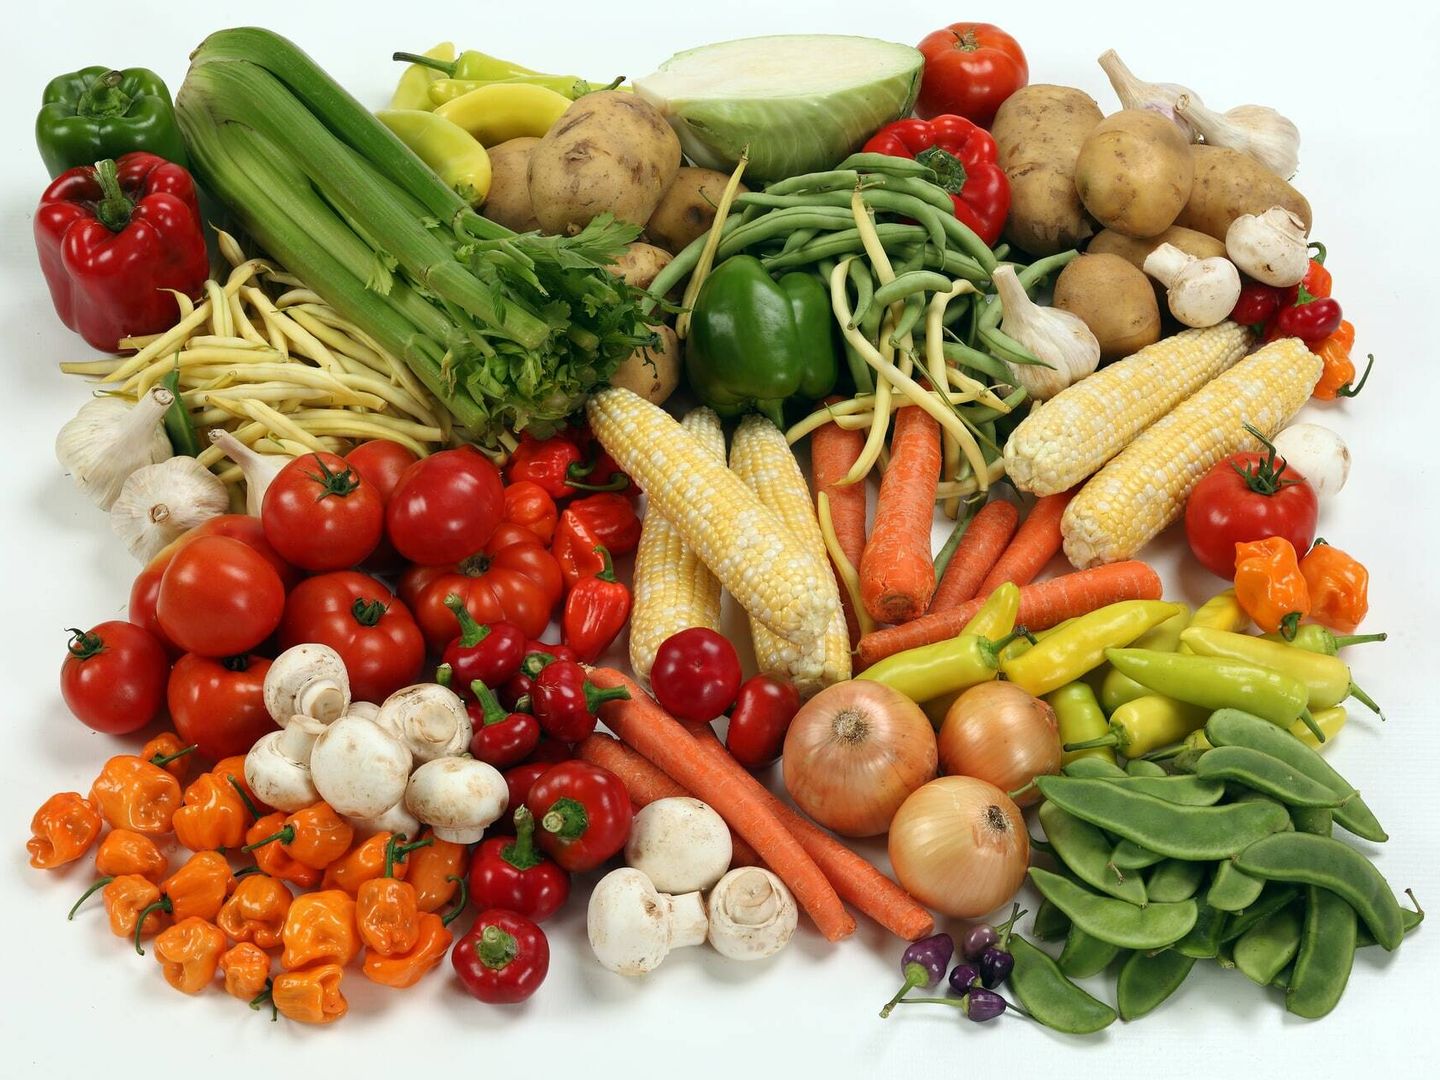 Es aconsejable incluir en nuestros platos verduras, que son beneficiosas para la salud (Unsplash)